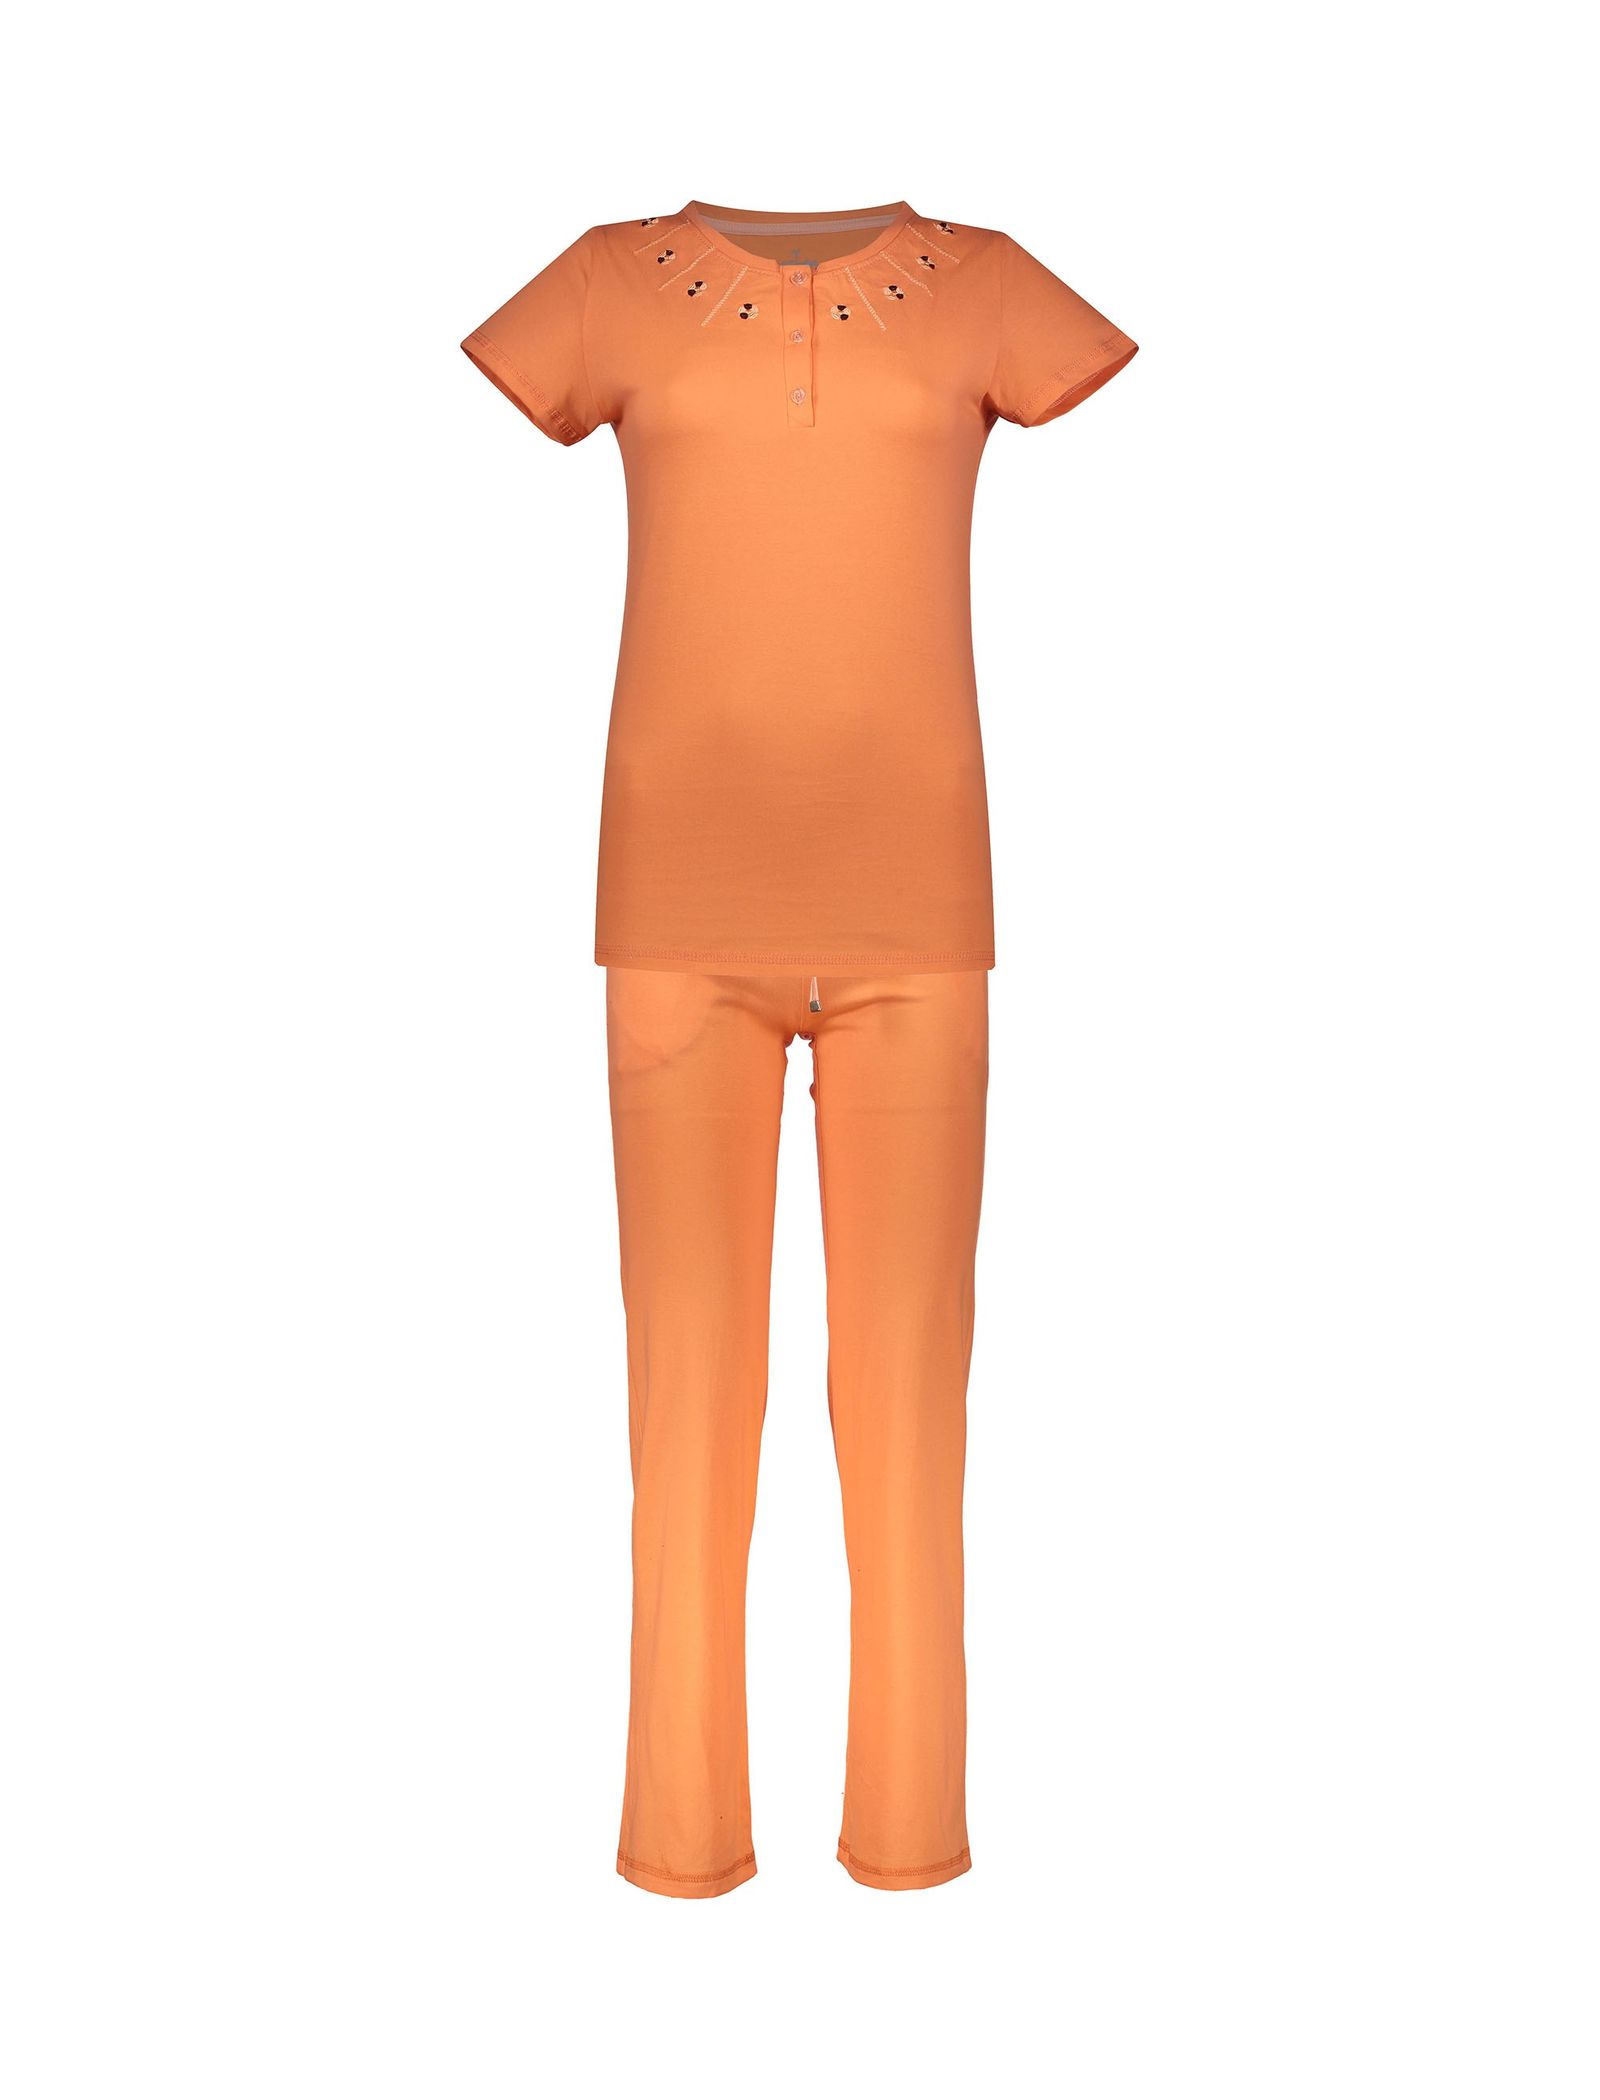 تی شرت و شلوار راحتی نخی زنانه - ناربن - نارنجي - 1